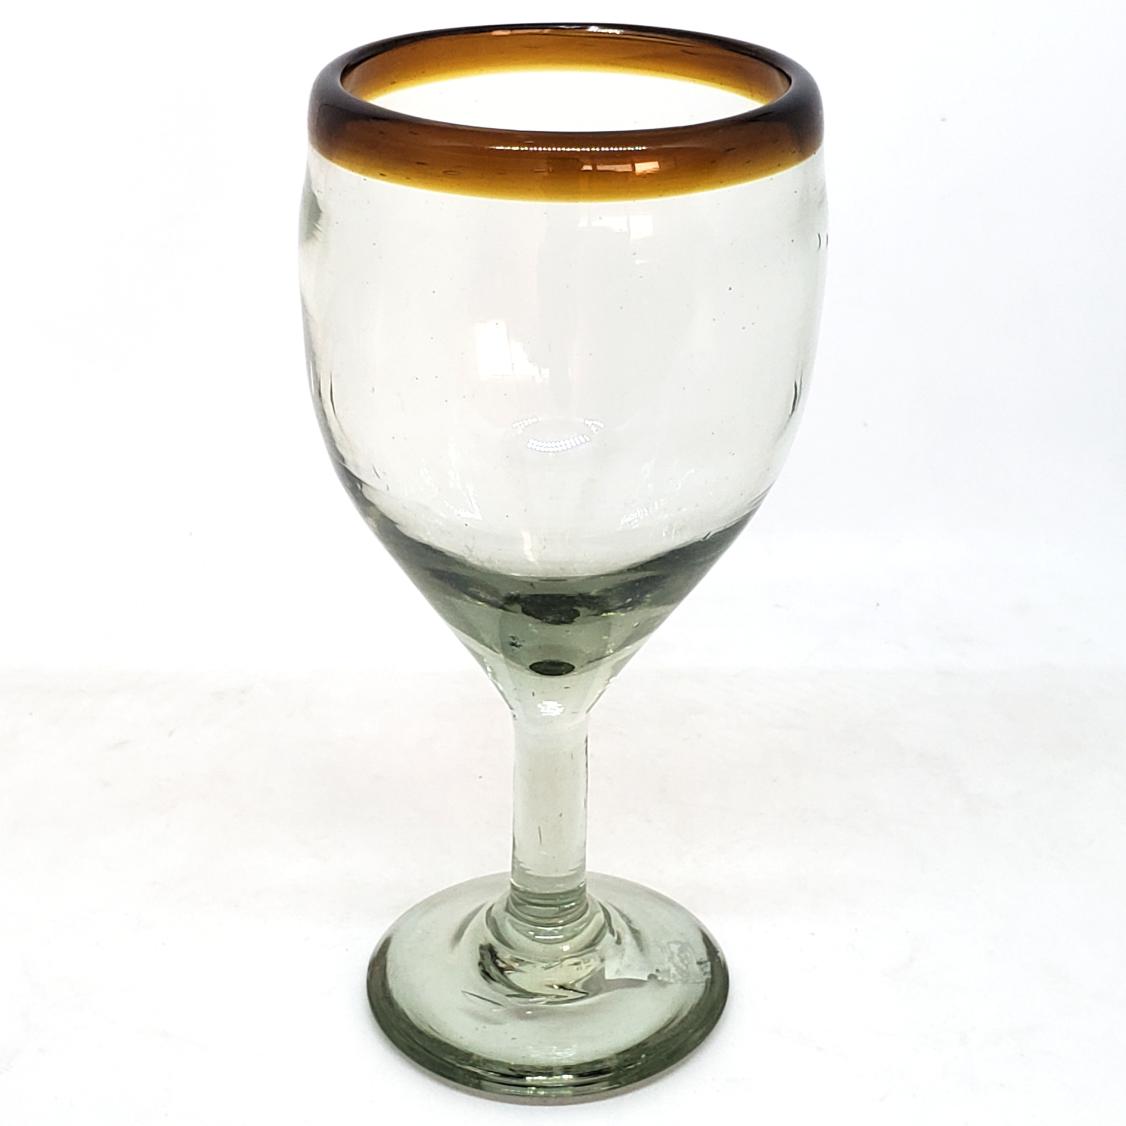 Borde Color Ambar al Mayoreo / copas para vino con borde ambar / Capture el aroma de un fino vino tinto con éstas copas decoradas con un borde ambar.